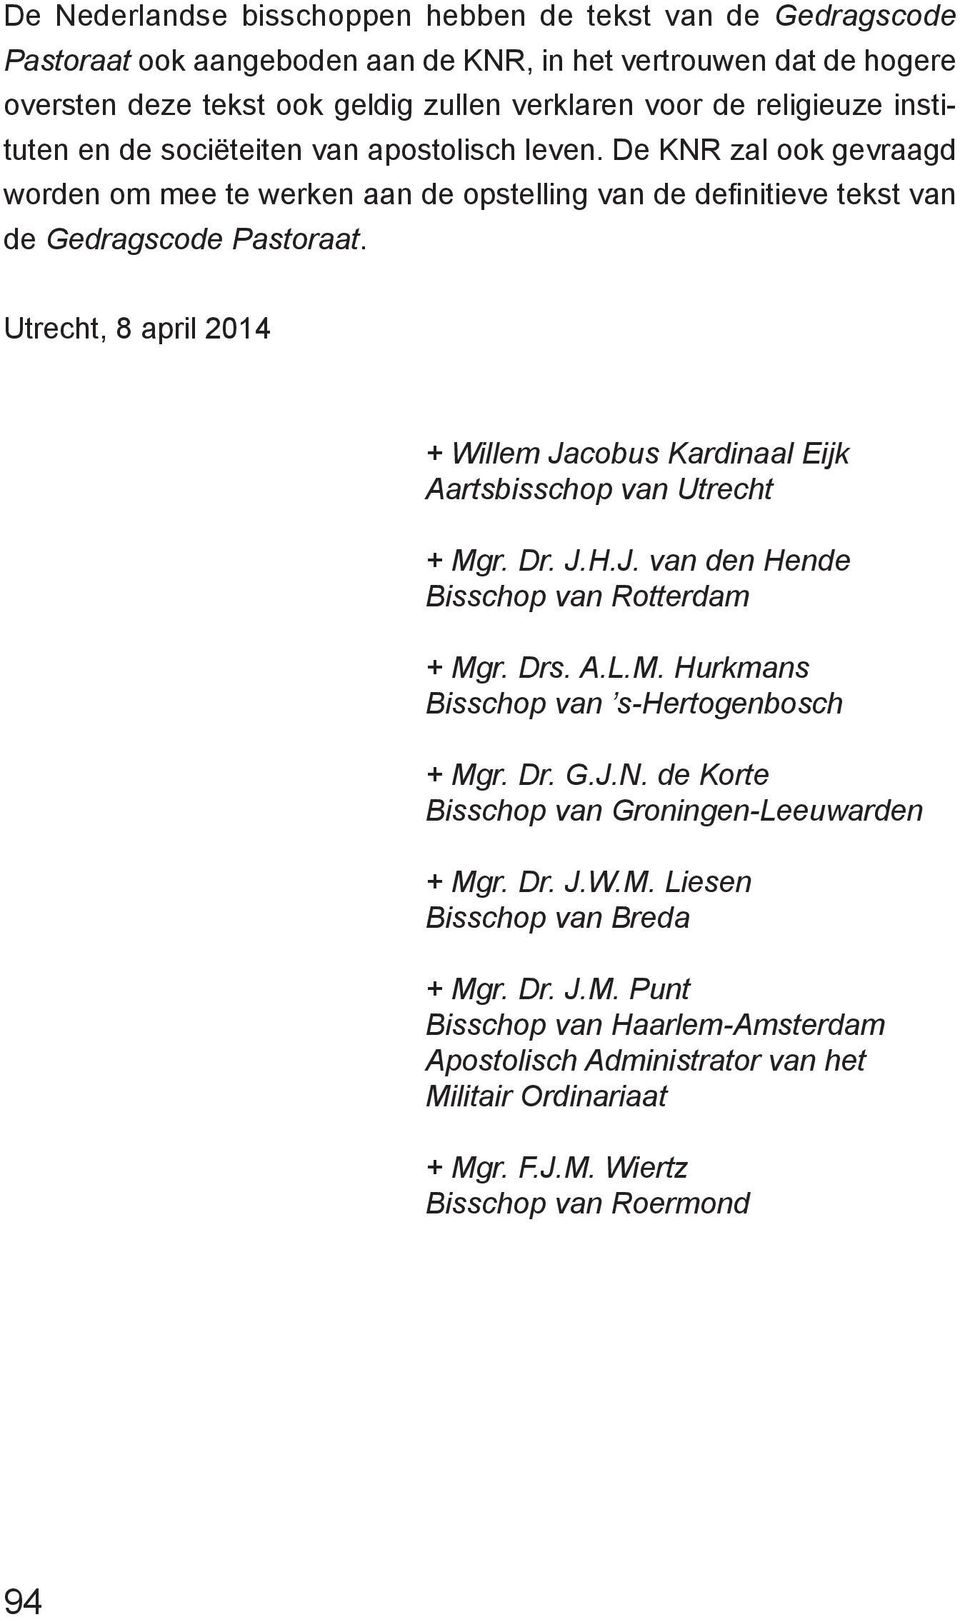 Utrecht, 8 april 2014 + Willem Jacobus Kardinaal Eijk Aartsbisschop van Utrecht + Mgr. Dr. J.H.J. van den Hende Bisschop van Rotterdam + Mgr. Drs. A.L.M. Hurkmans Bisschop van s-hertogenbosch + Mgr.